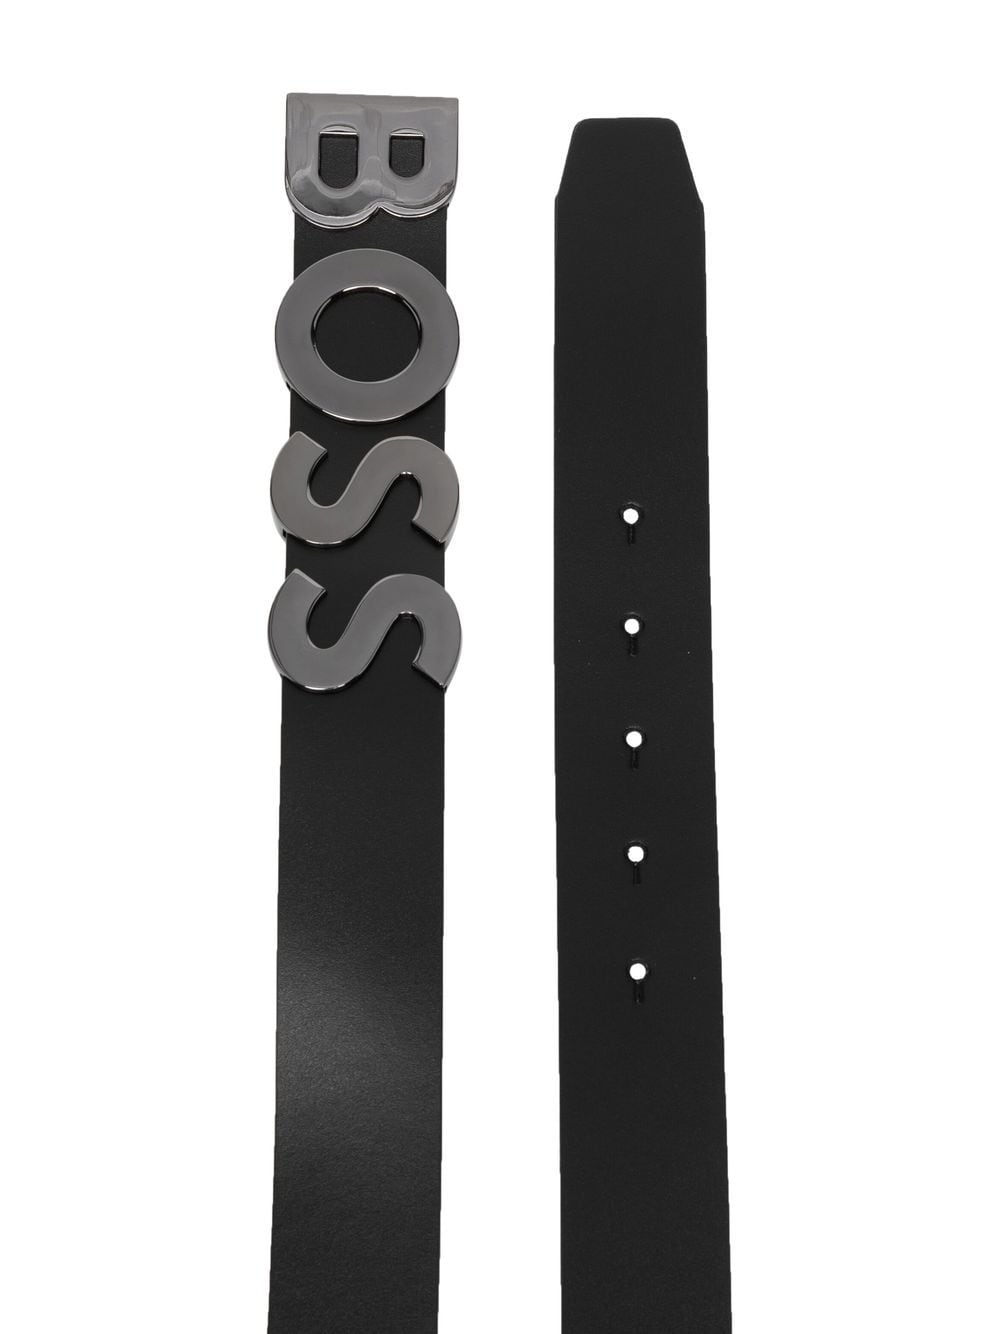 BOSS Logo-plaque Detail Buckle Belt Black - MAISONDEFASHION.COM